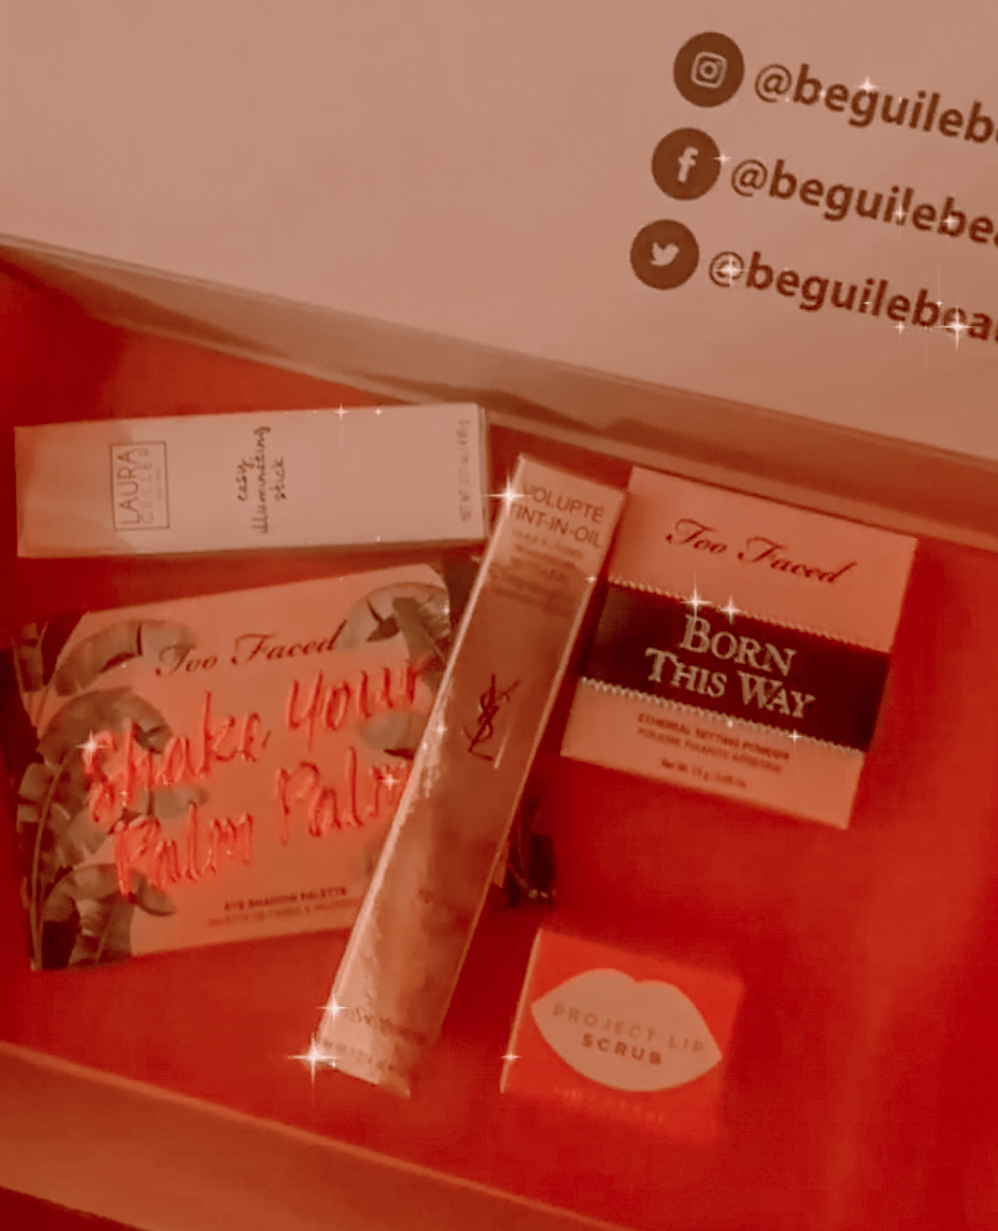 Beguile Beauty Box